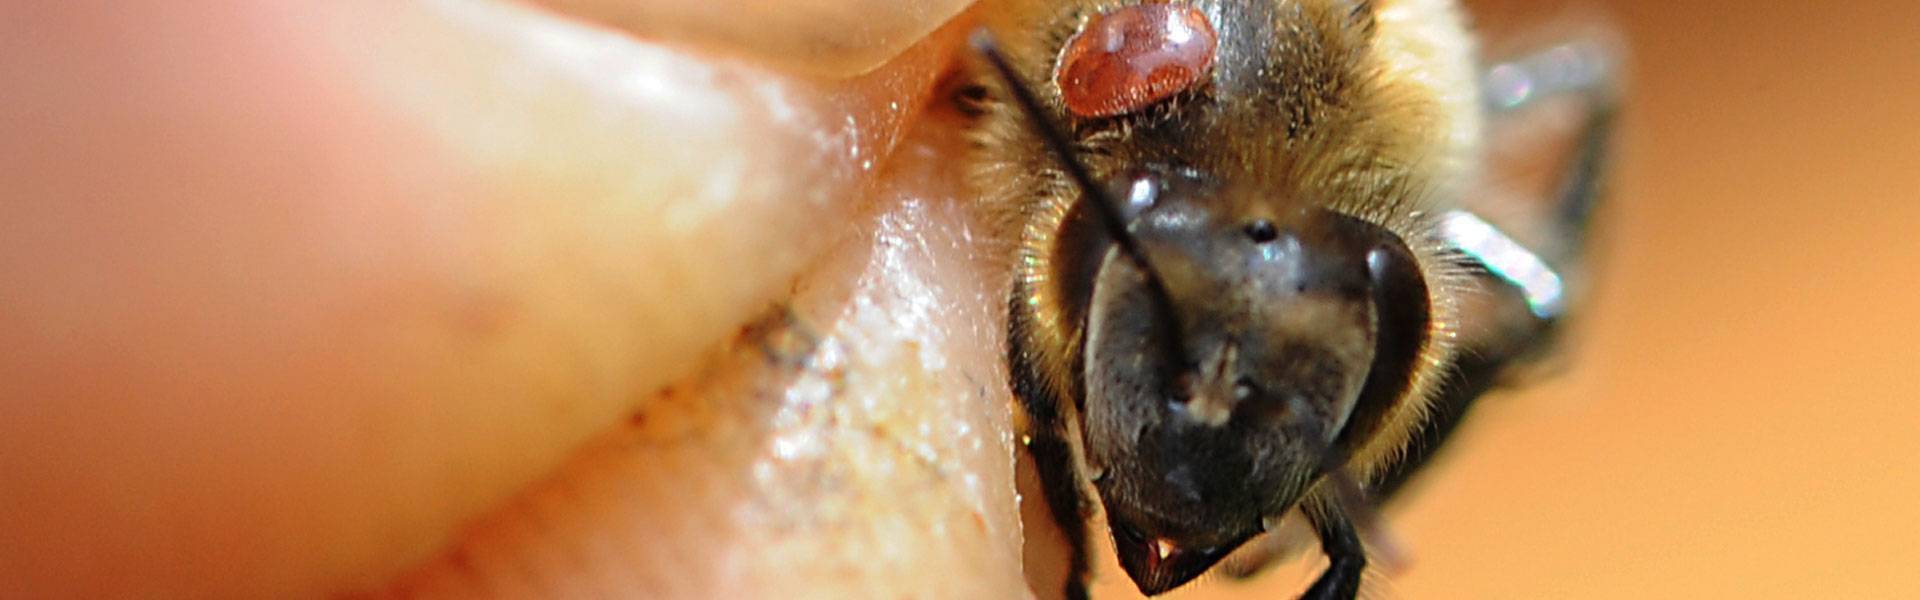 Акарапидоз: диагностика и лечение пчел от трахейных клещей | пчеловодство